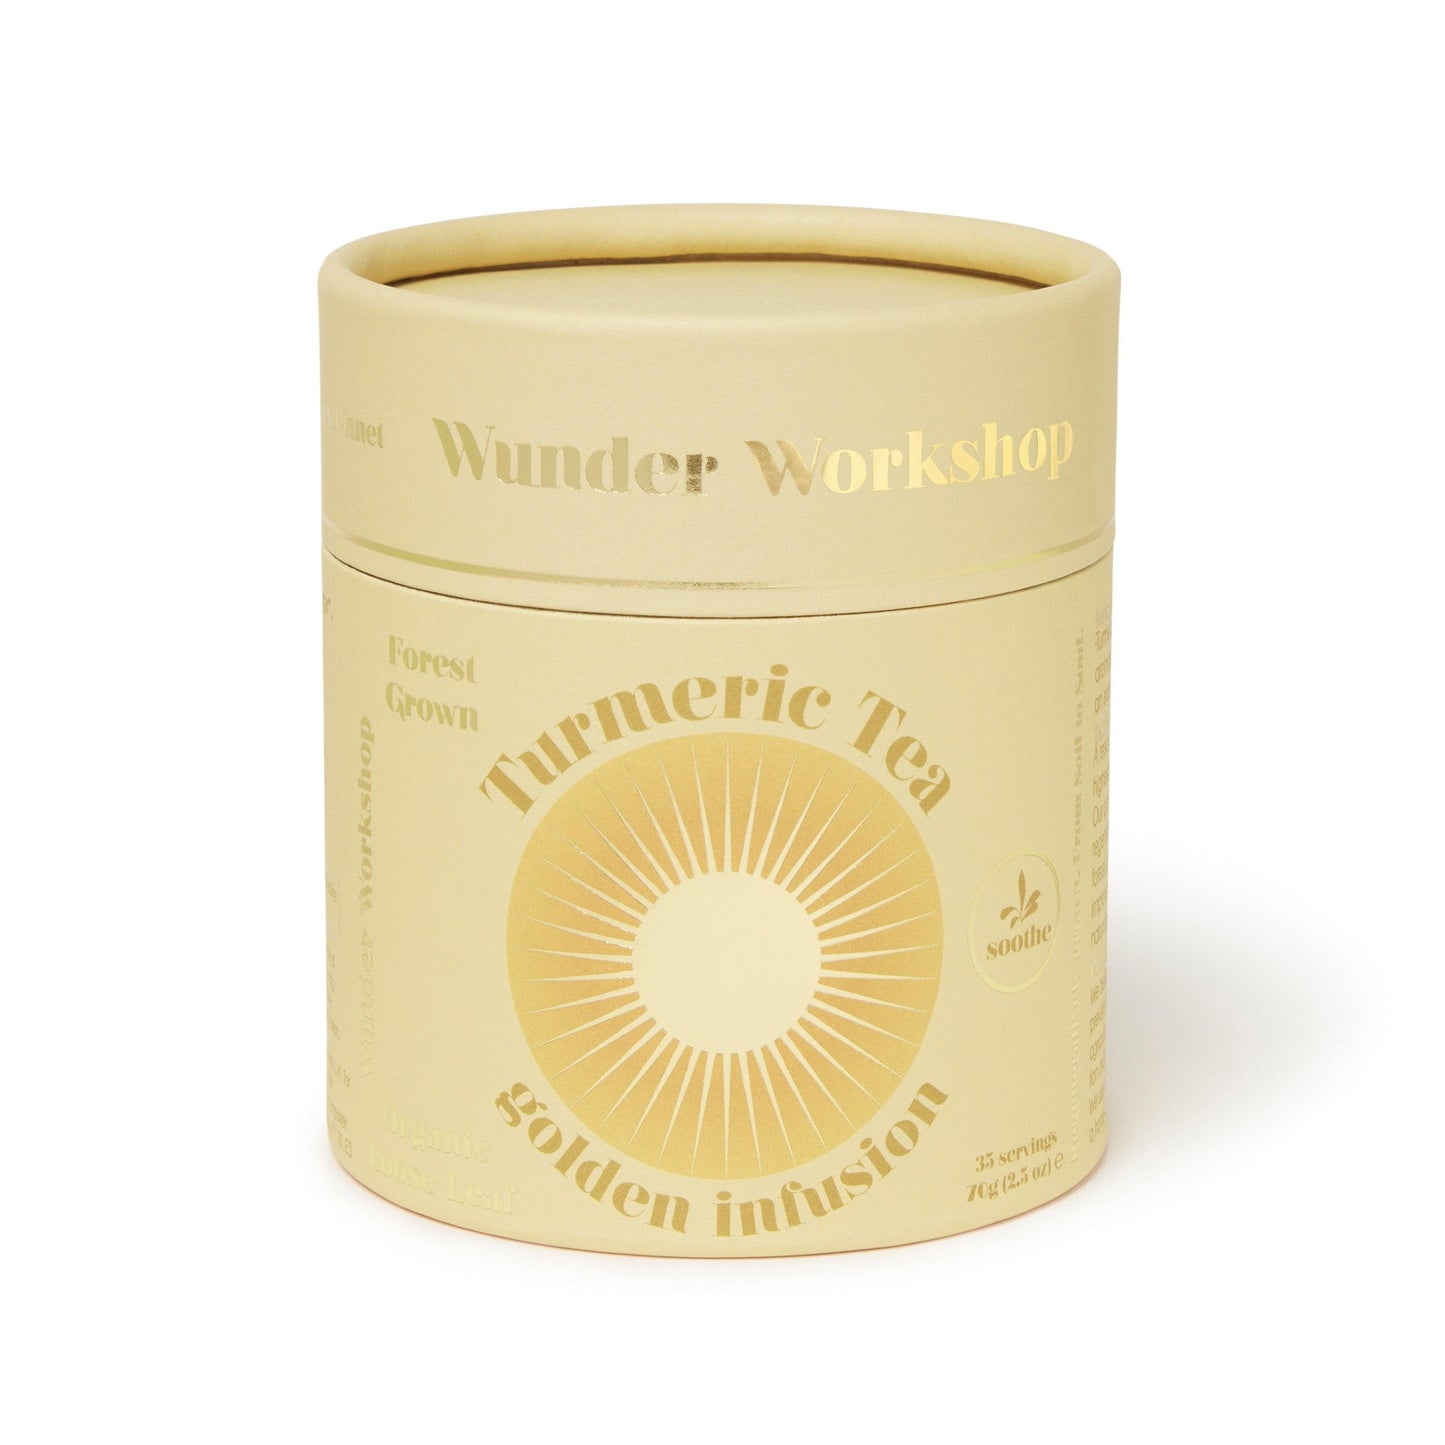 GOLDEN TURMERIC TEA - Soothe & Rejuvenate - Wunder Workshop